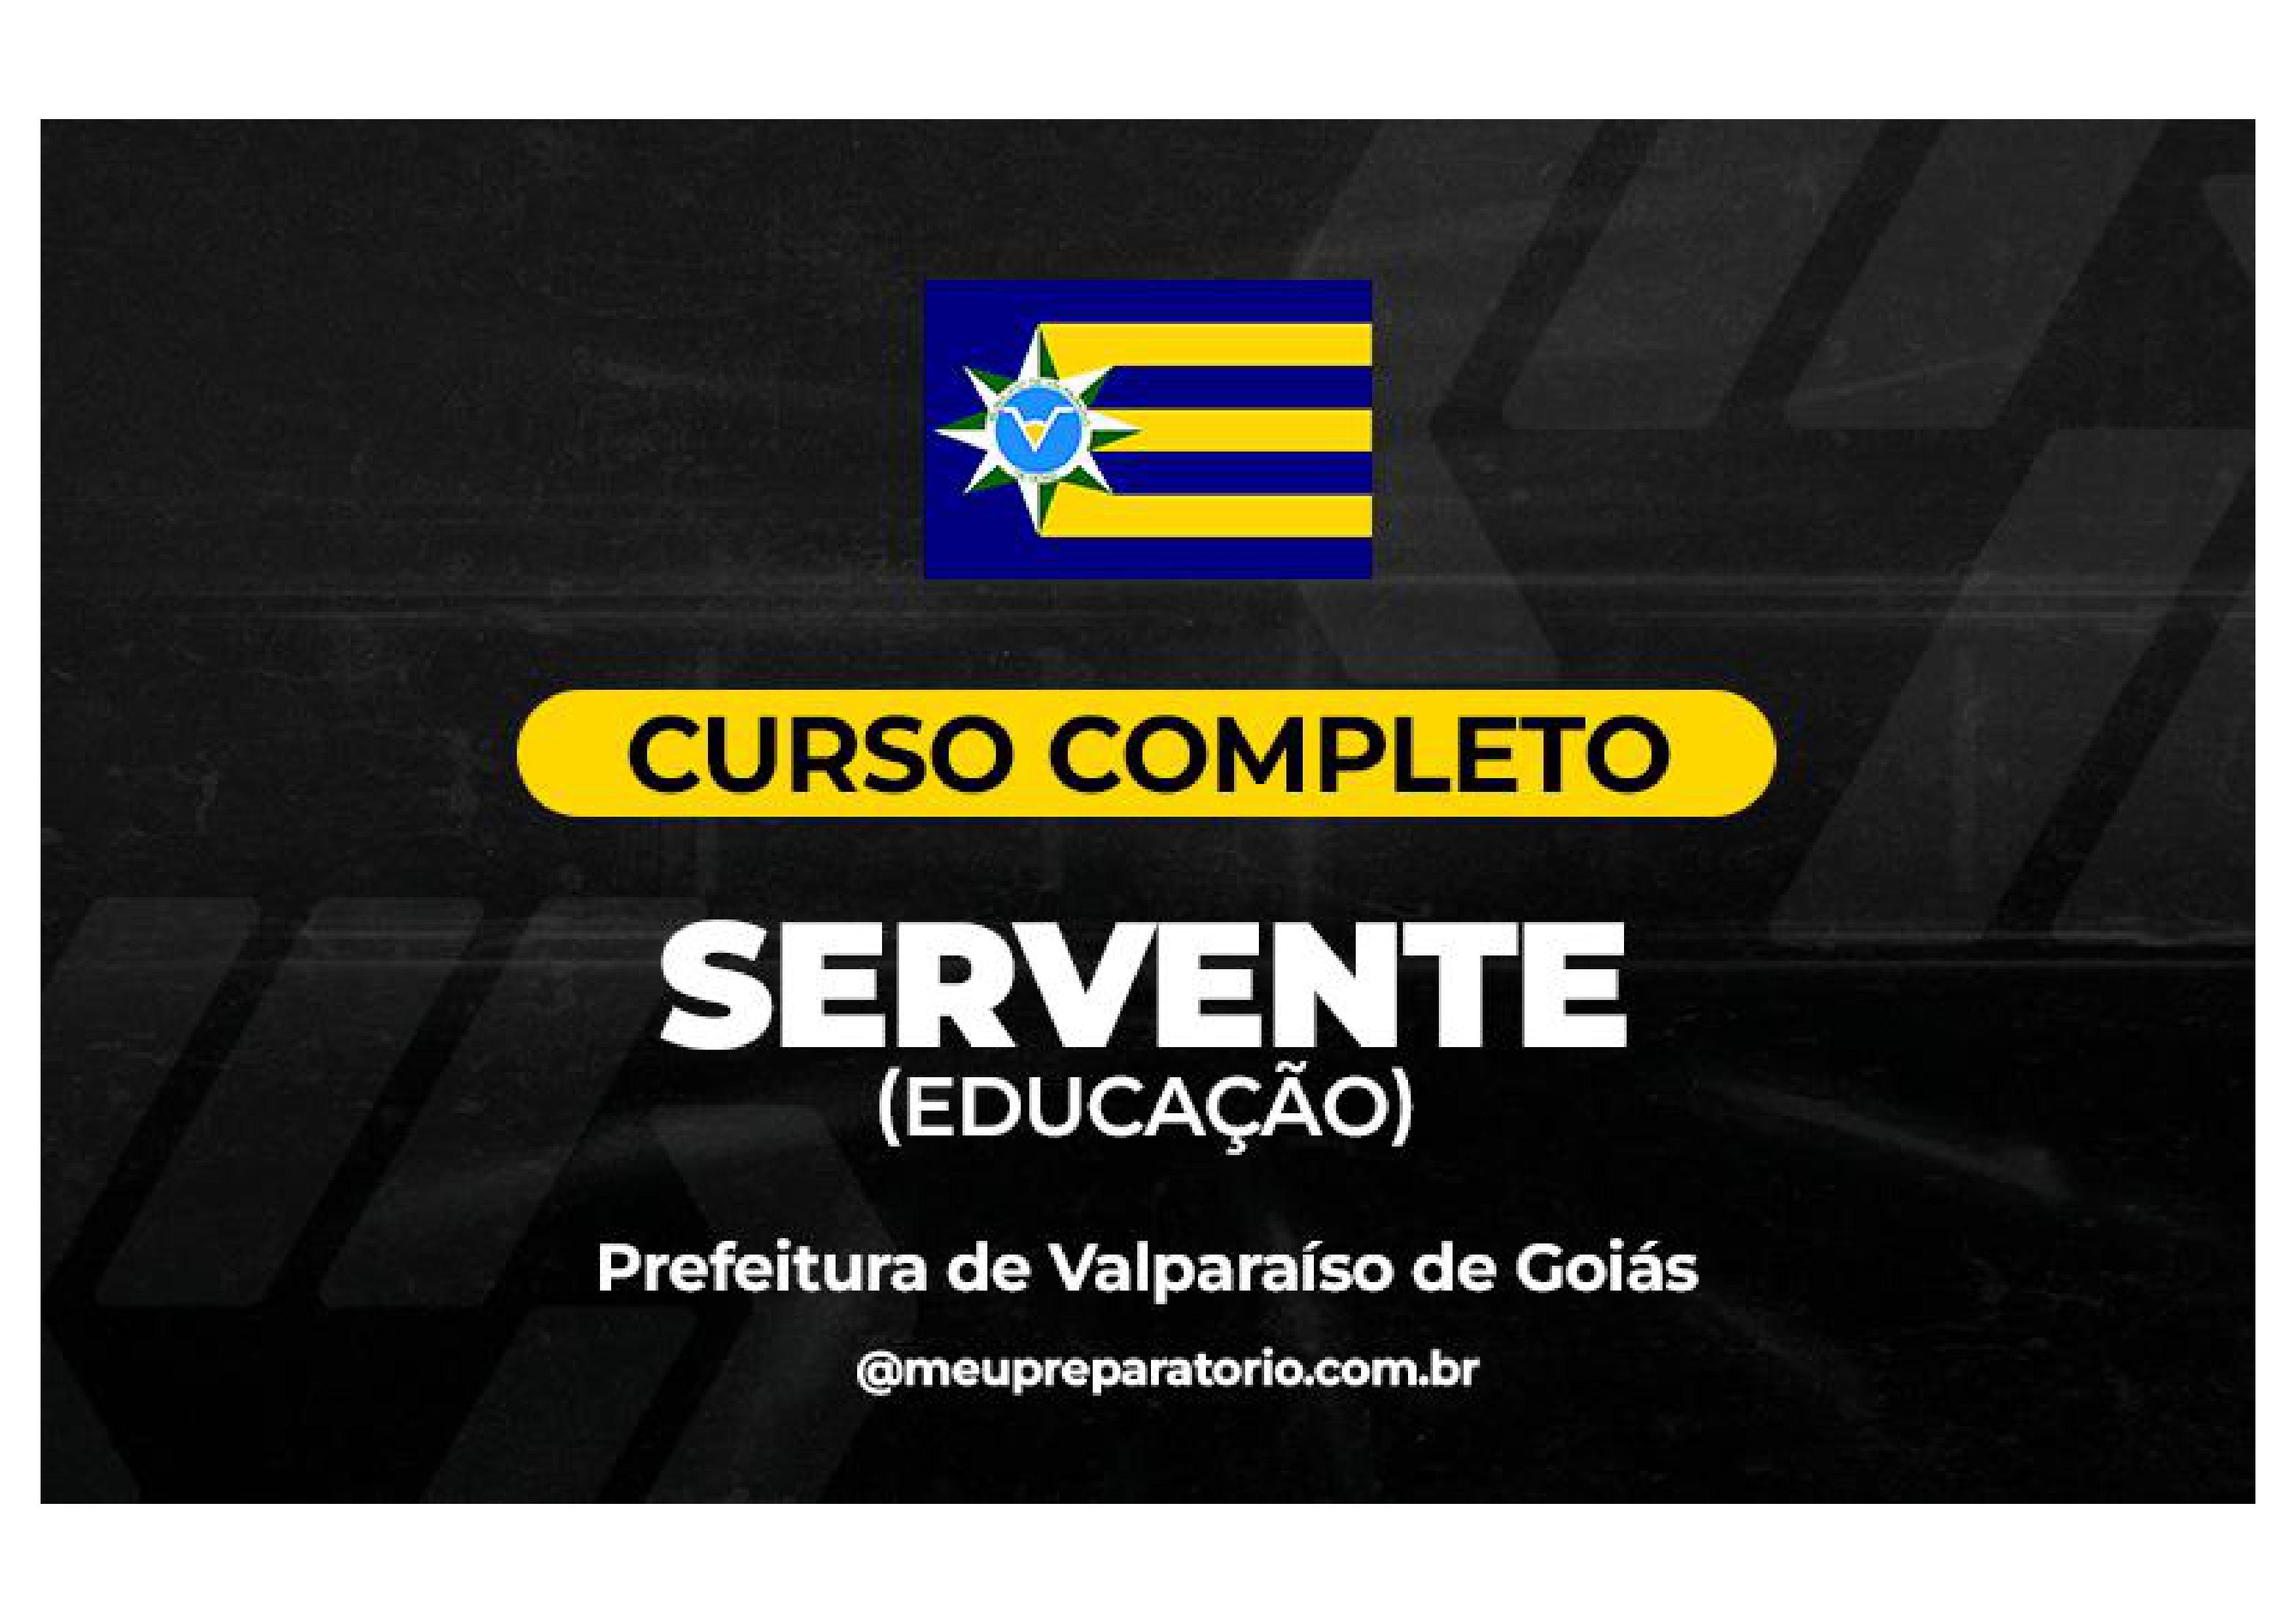 Servente (Educação) - Valparaíso (GO)